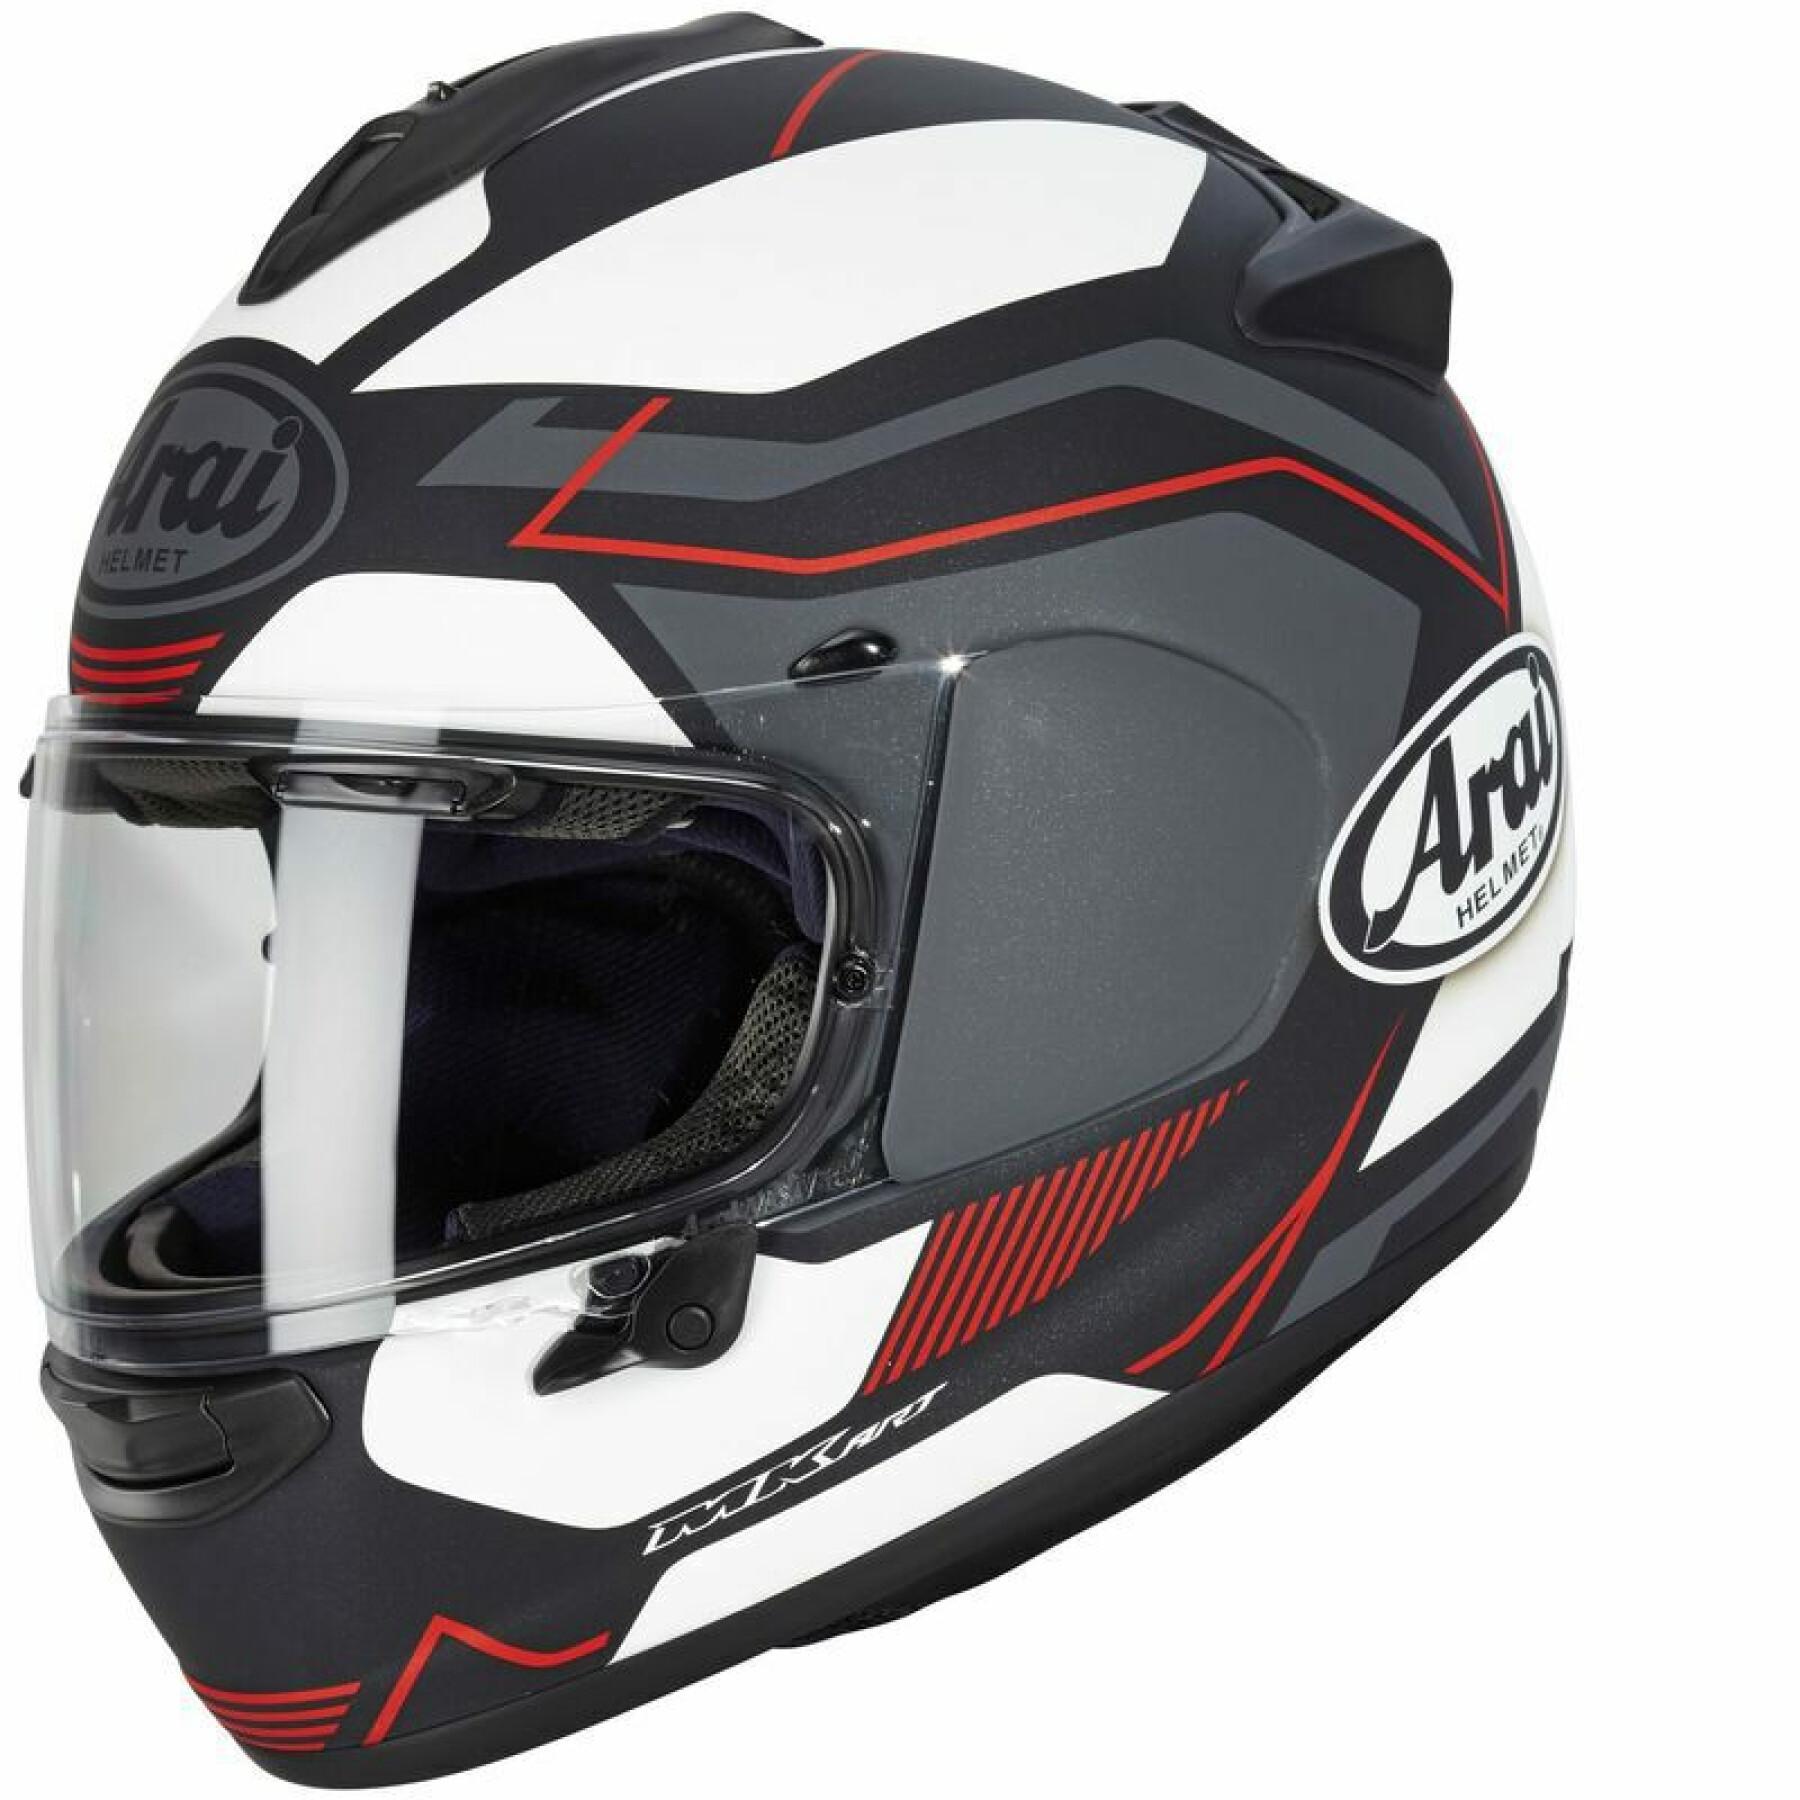 Full face motorcycle helmet Arai Chaser-X - Sensation